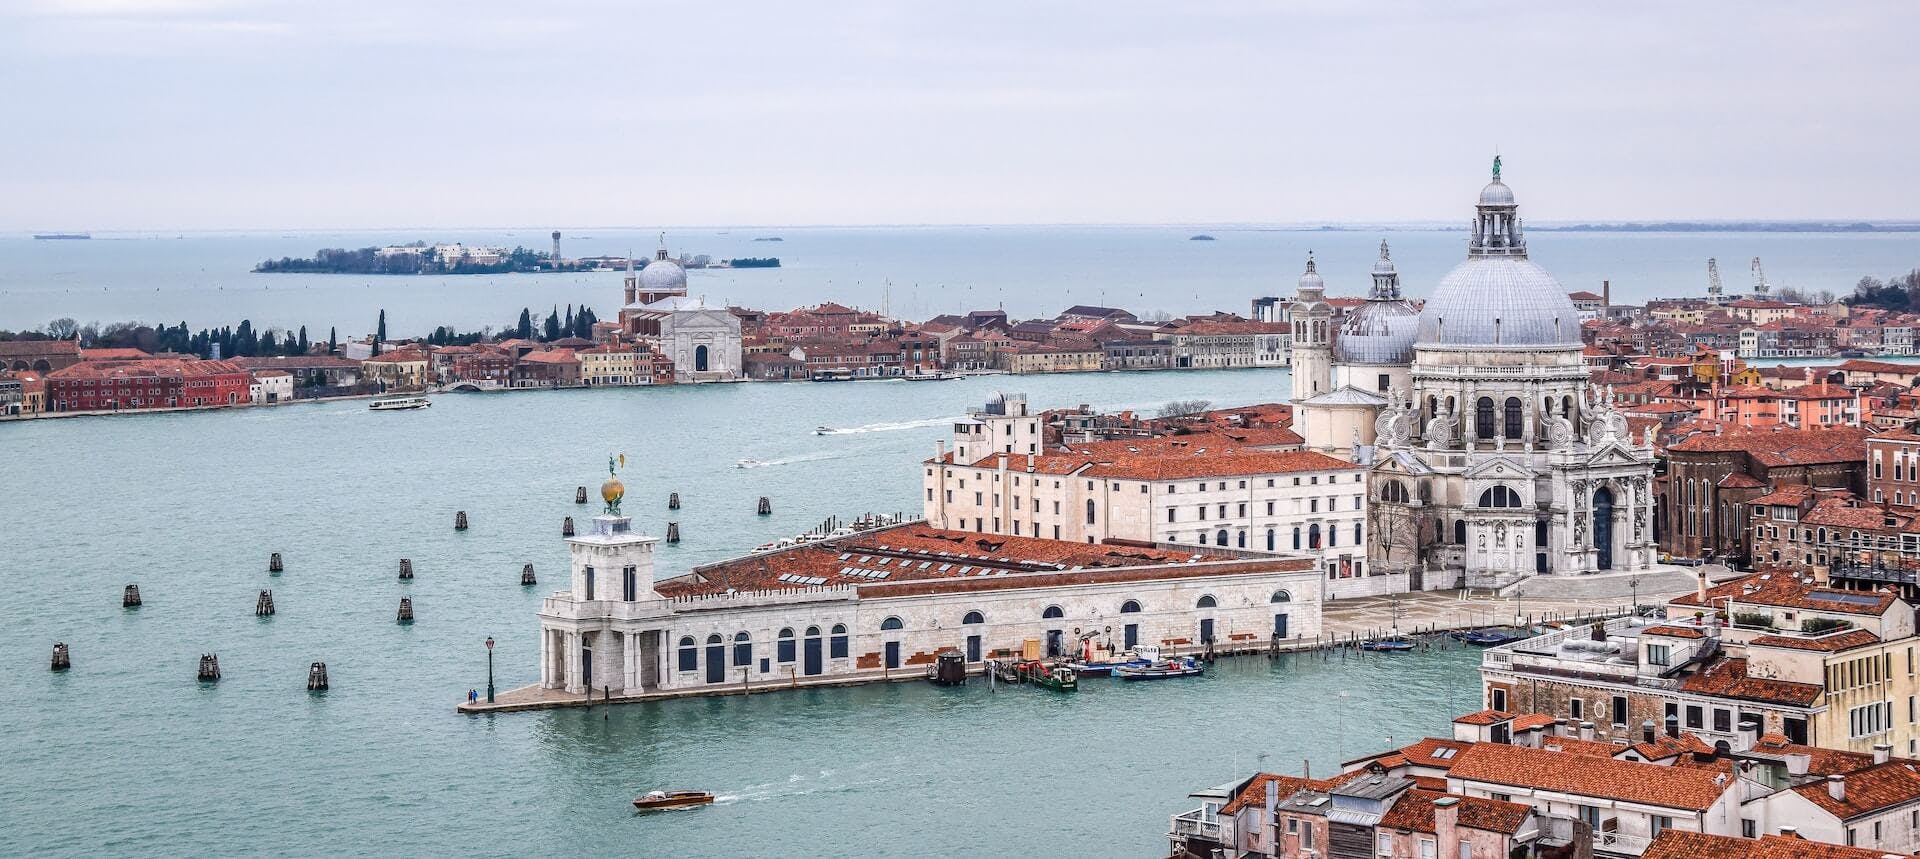 Vista aérea de Venecia observando la Basilica di Santa Maria della Salute